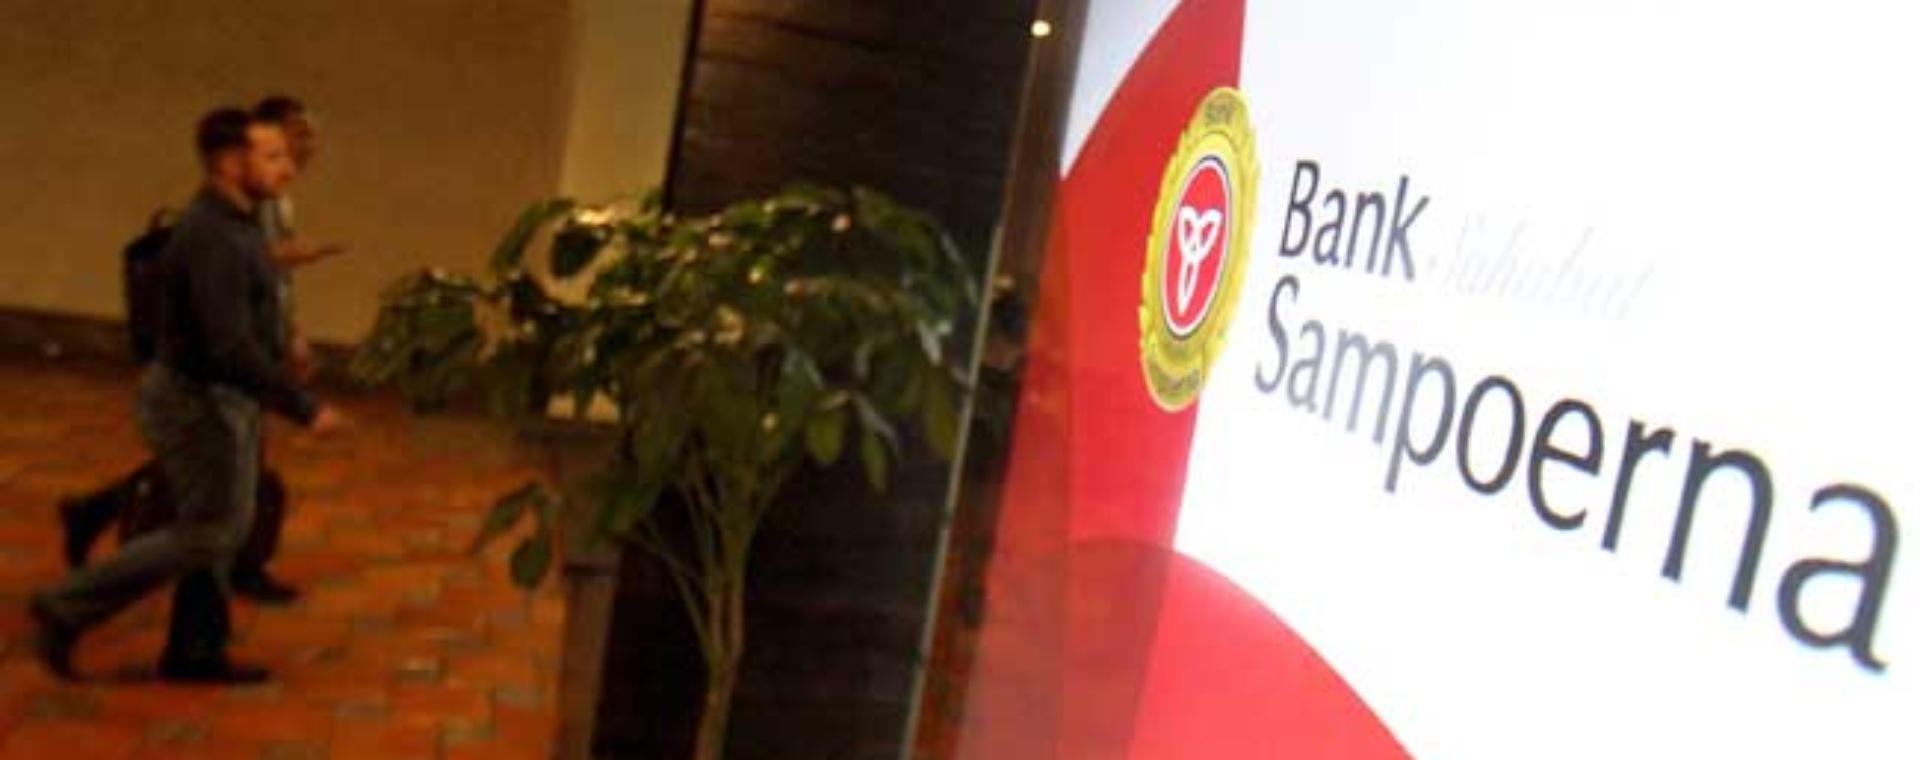 Pengunjung melintas didekat logo Bank Sampoerna di Jakarta. Bisnis/Arief Hermawan P